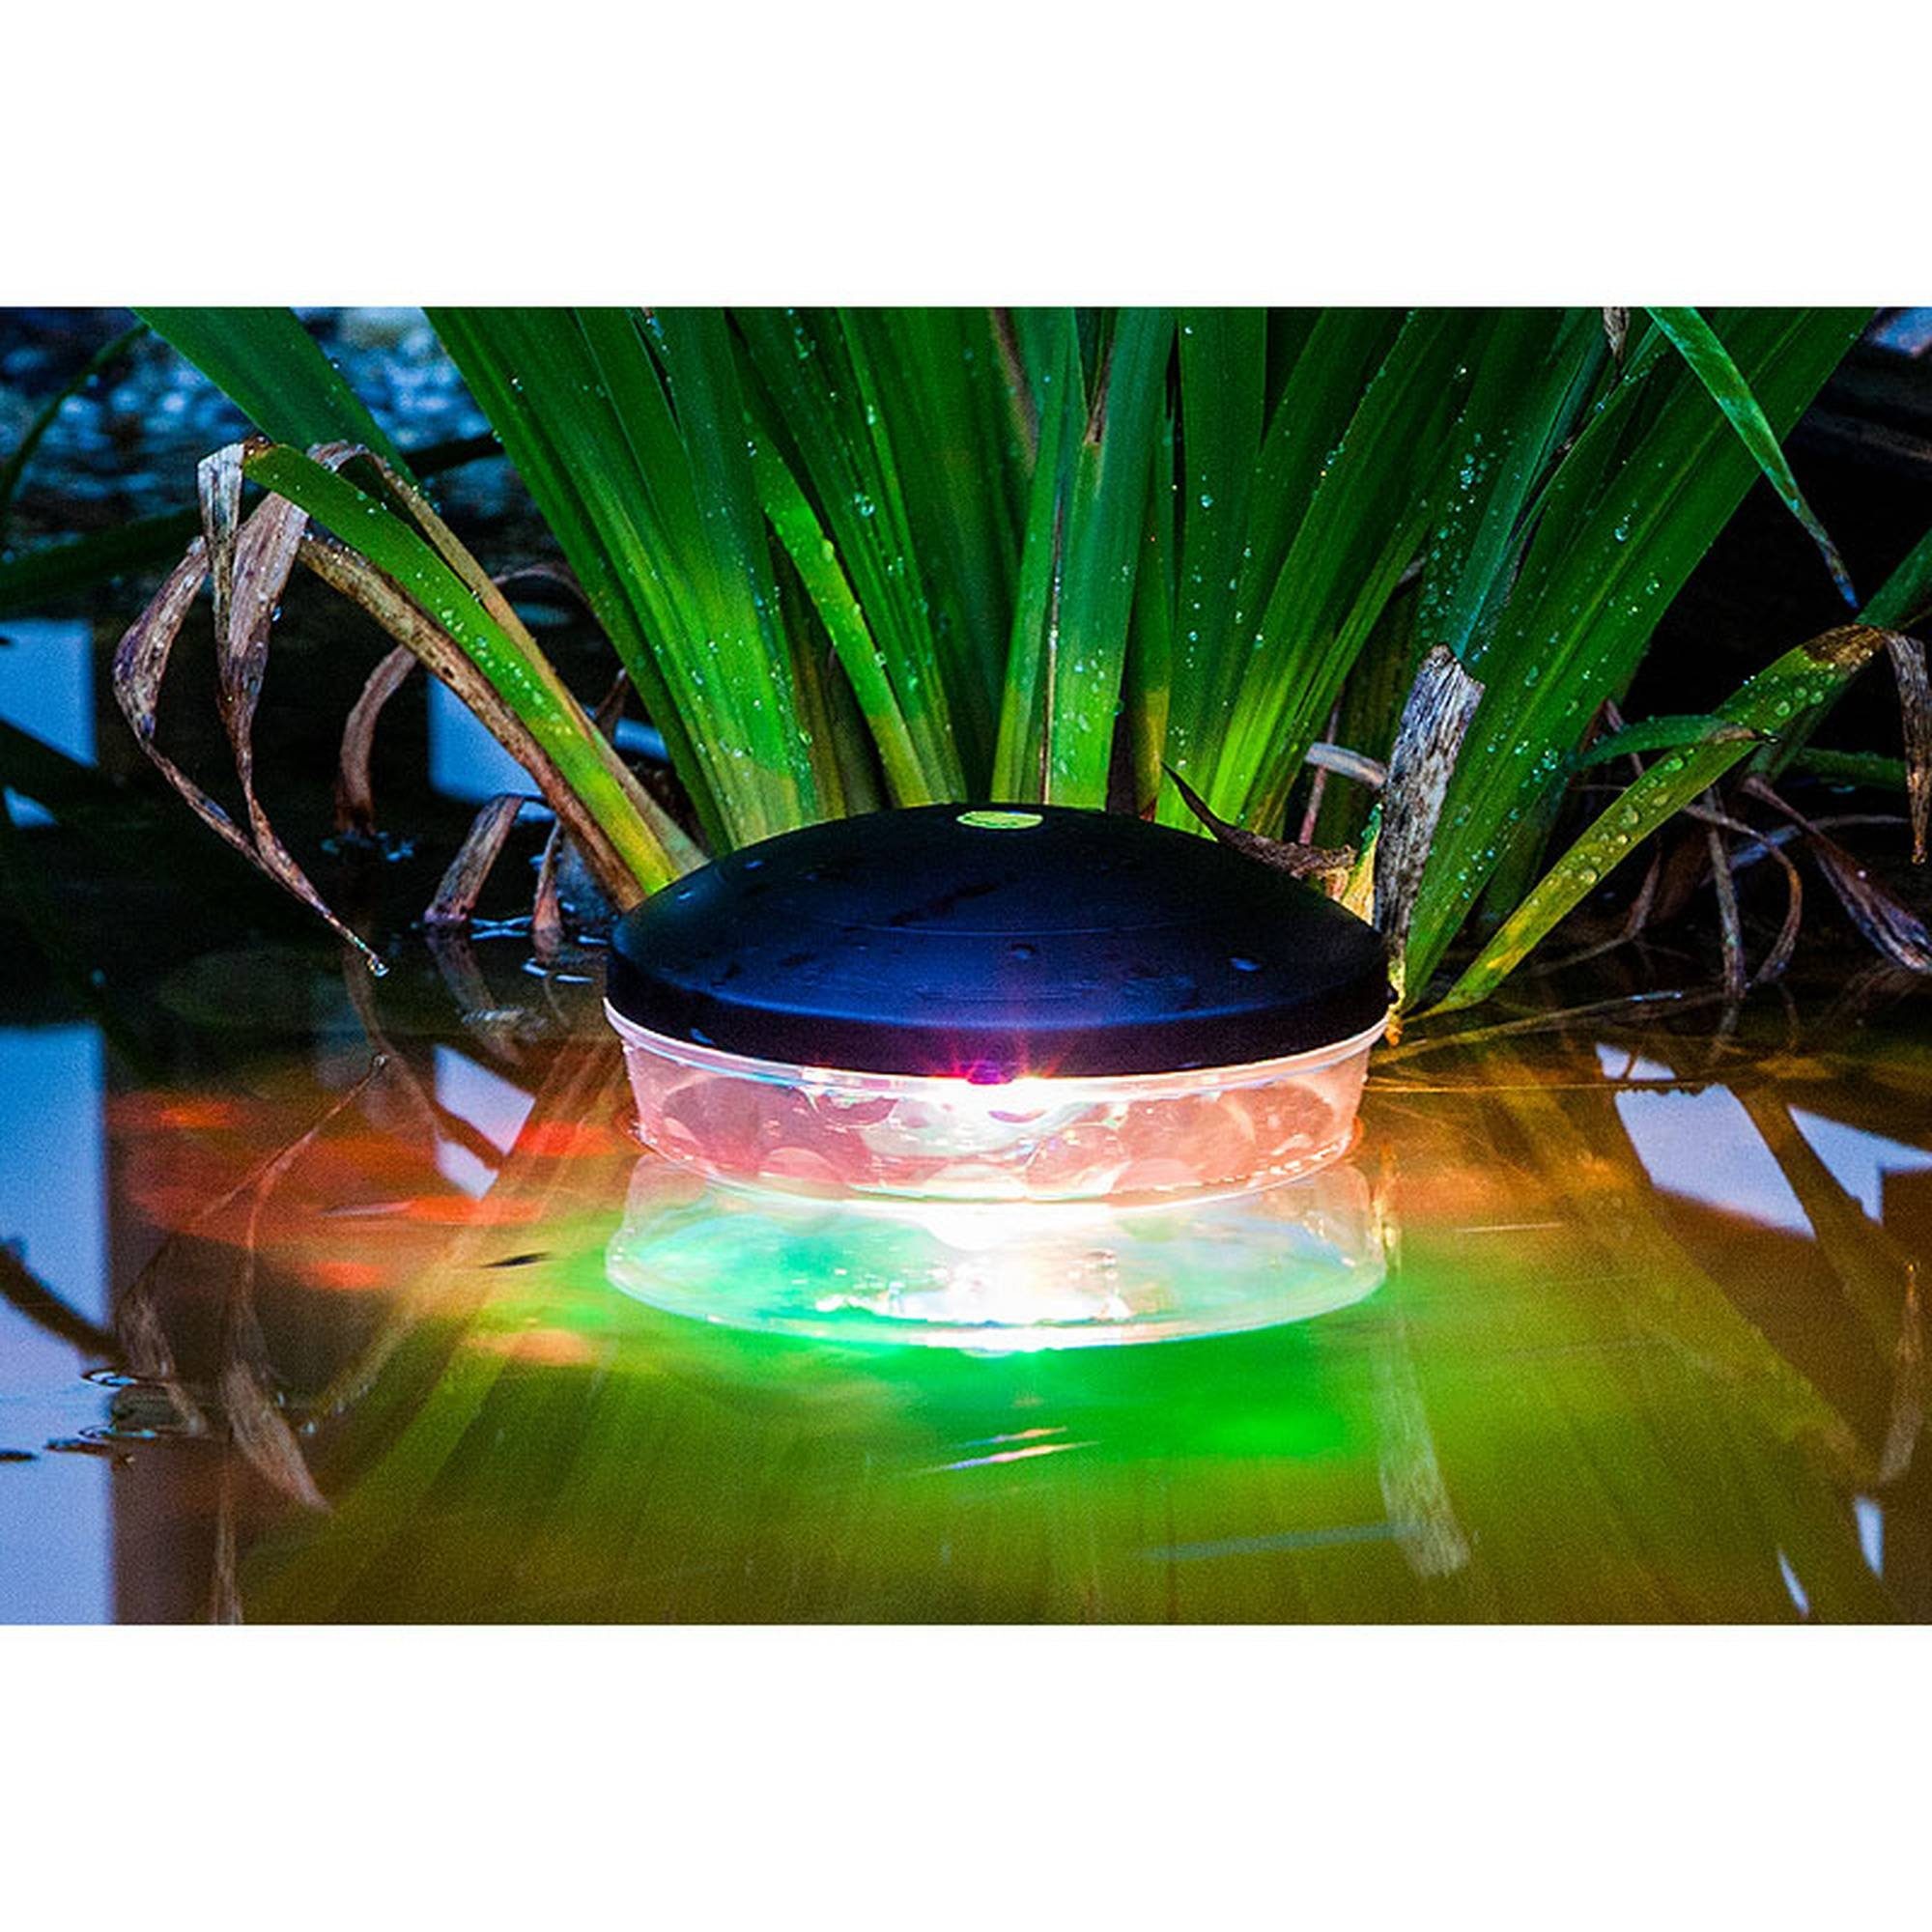 Heissner LED Teichleuchte Schwimmende Unterwasserlichtshow, 4 LED's RGB